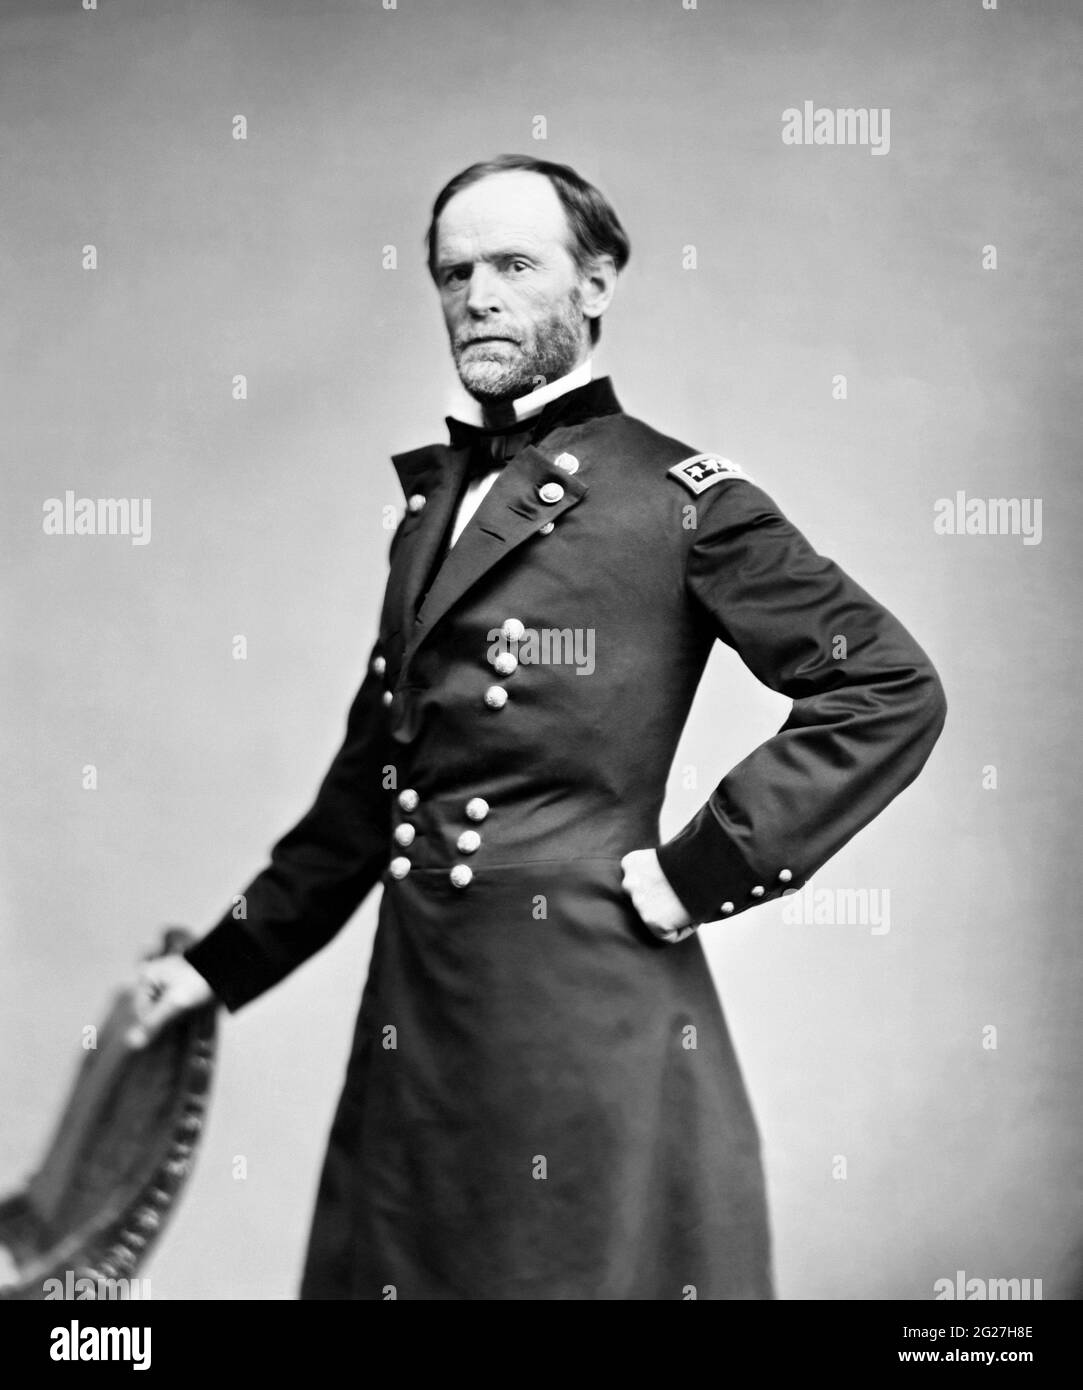 Porträt von General William Tecumseh Sherman, einem amerikanischen Soldaten der Union Army. Stockfoto